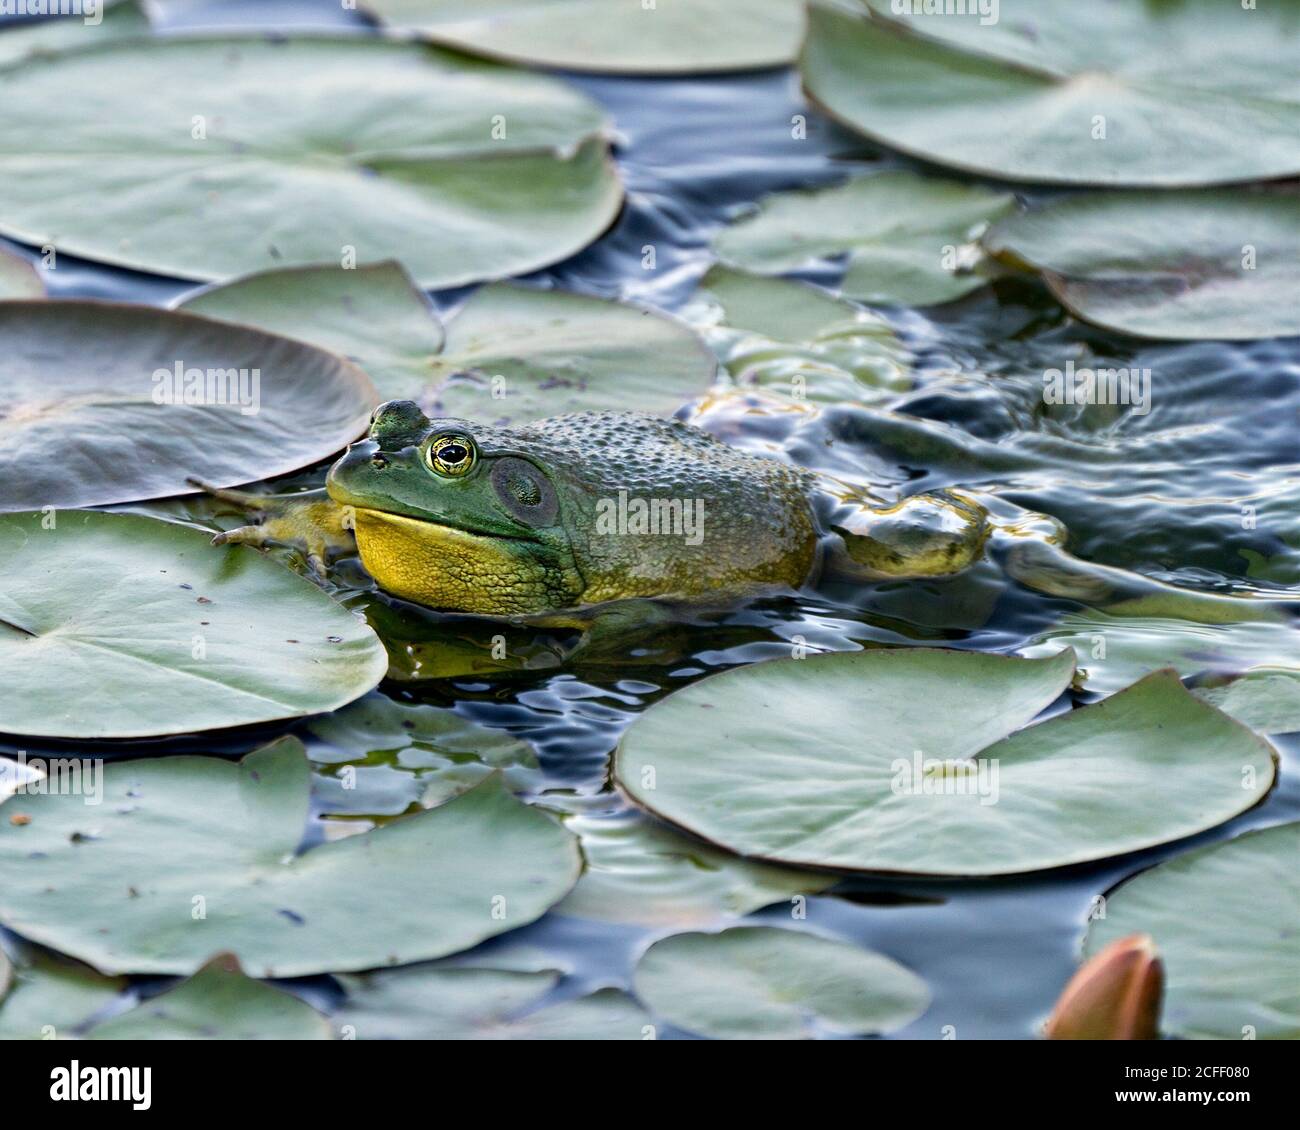 Frosch auf einer Seerose im Wasser sitzend, zeigt grünen Körper, Kopf, Beine, Auge in seiner Umgebung und Lebensraum, Blick auf die linke Seite. Stockfoto